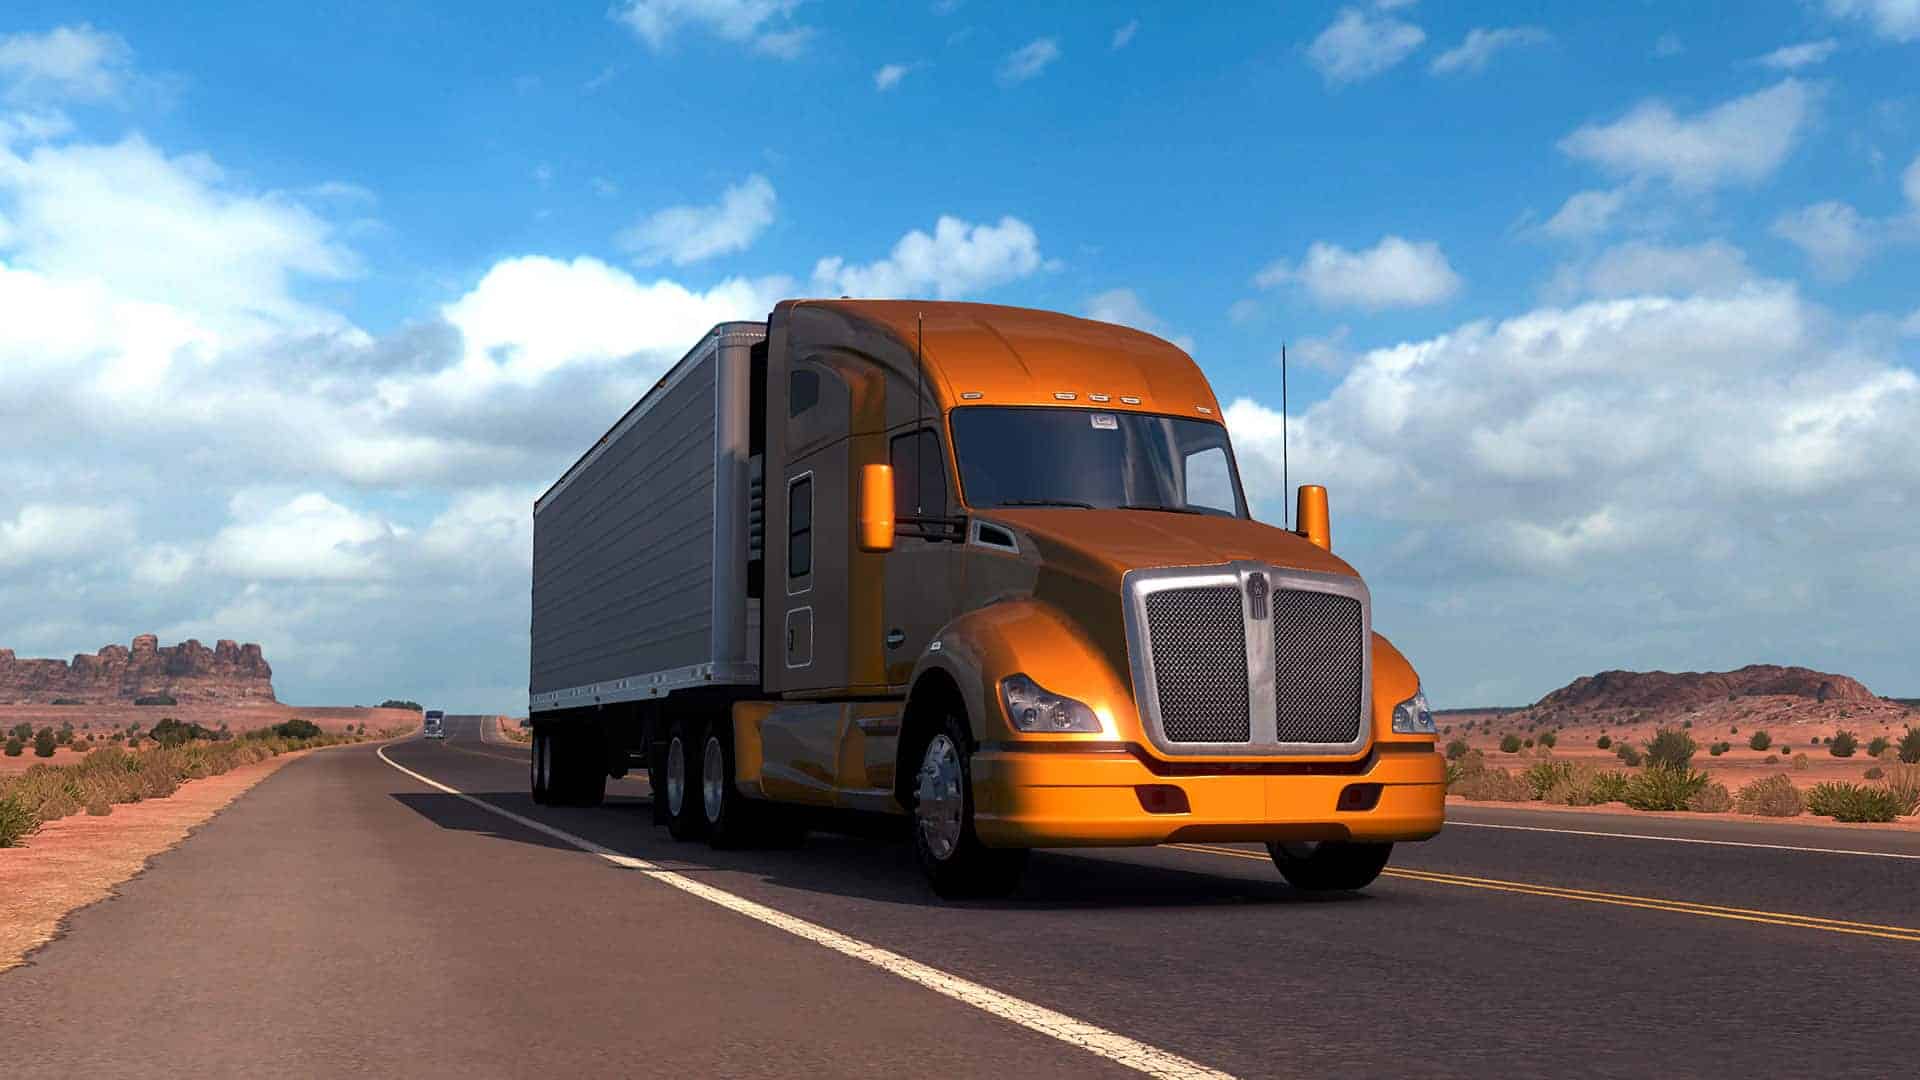 American Truck Simulator PC Game Download